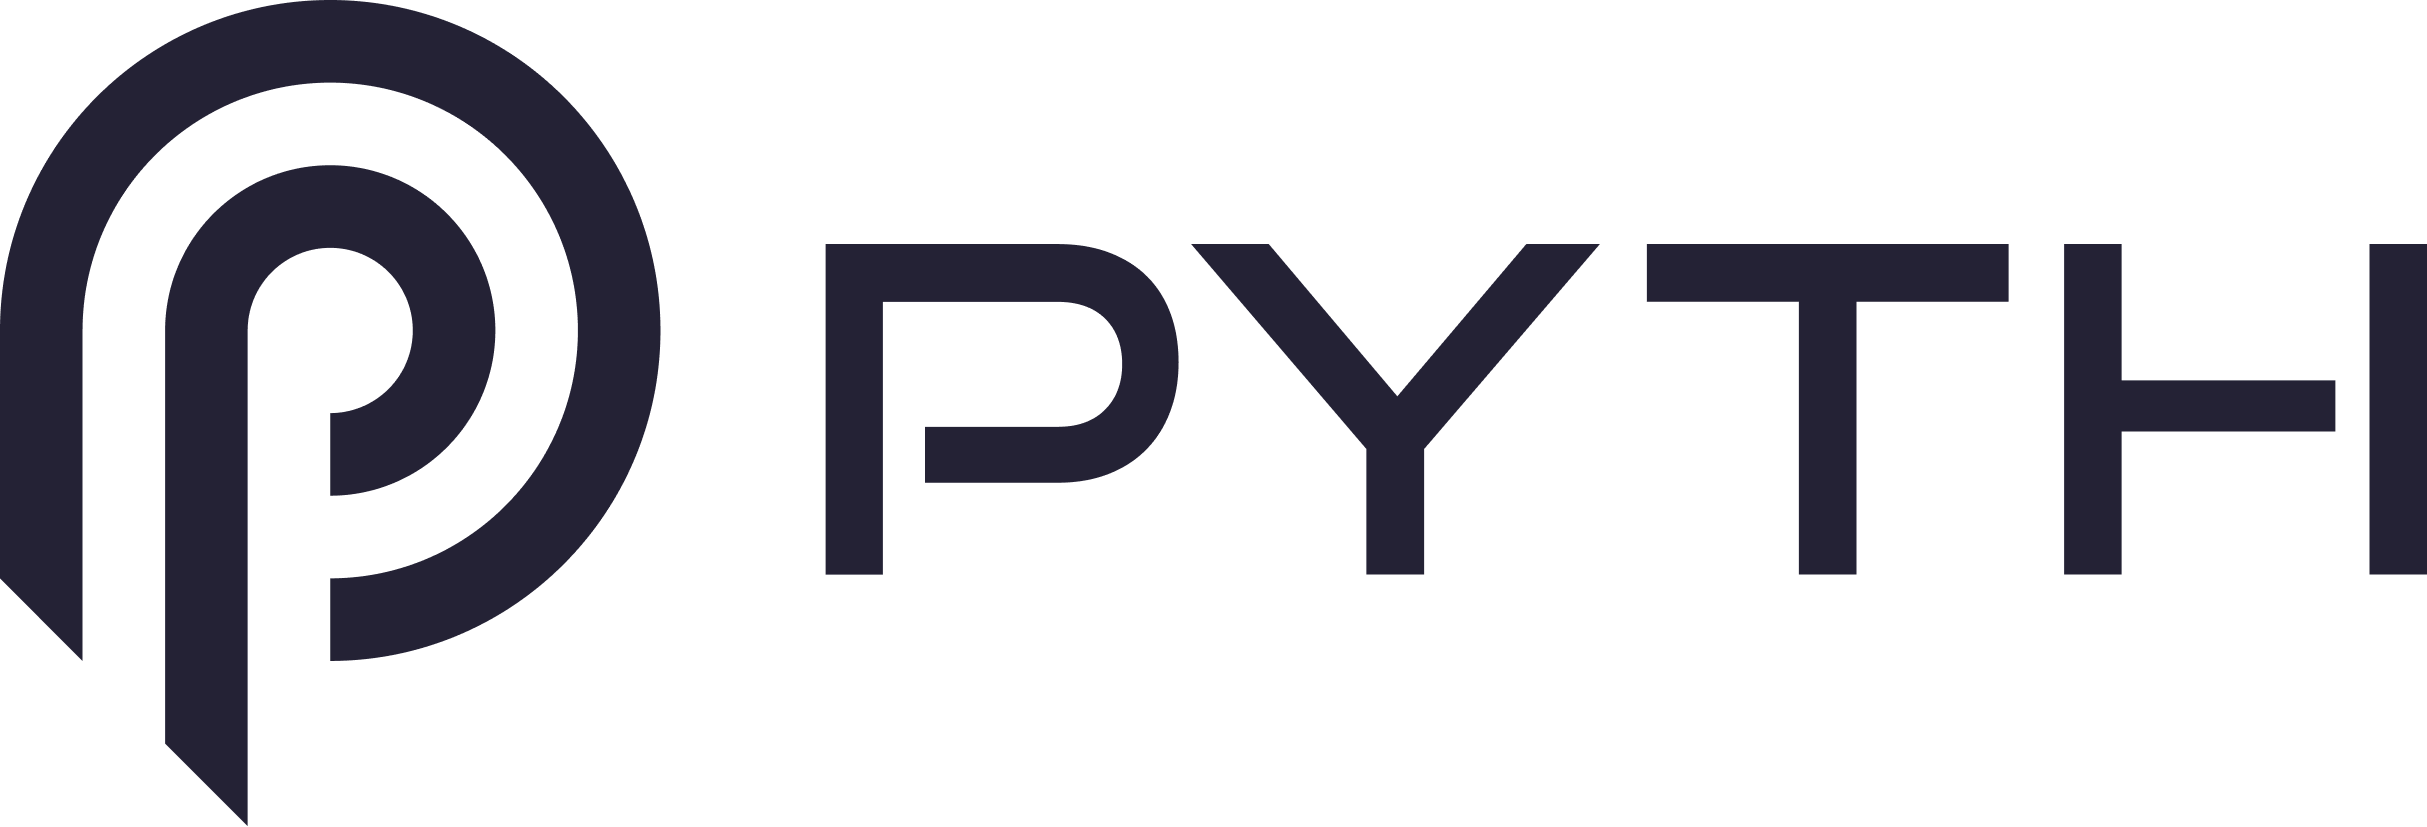 Kaj je omrežje Pyth? $PYTH – azijski kripto danes